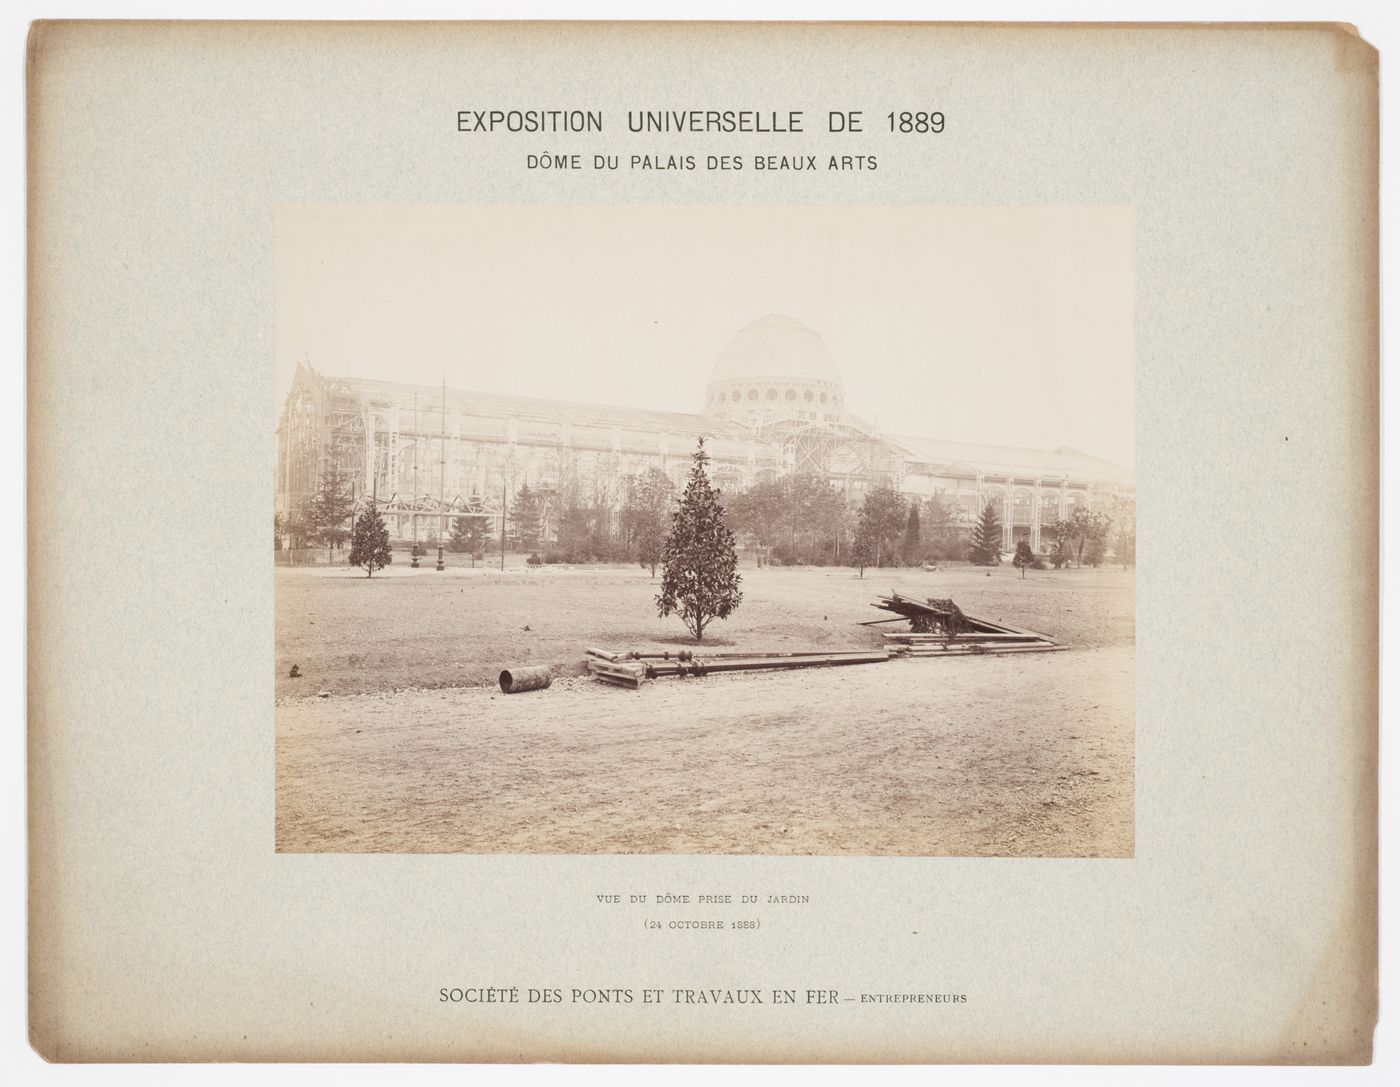 View of Dome du Palais des Beaux Arts, taken from the garden, Exposition Universelle de 1889, Paris, France